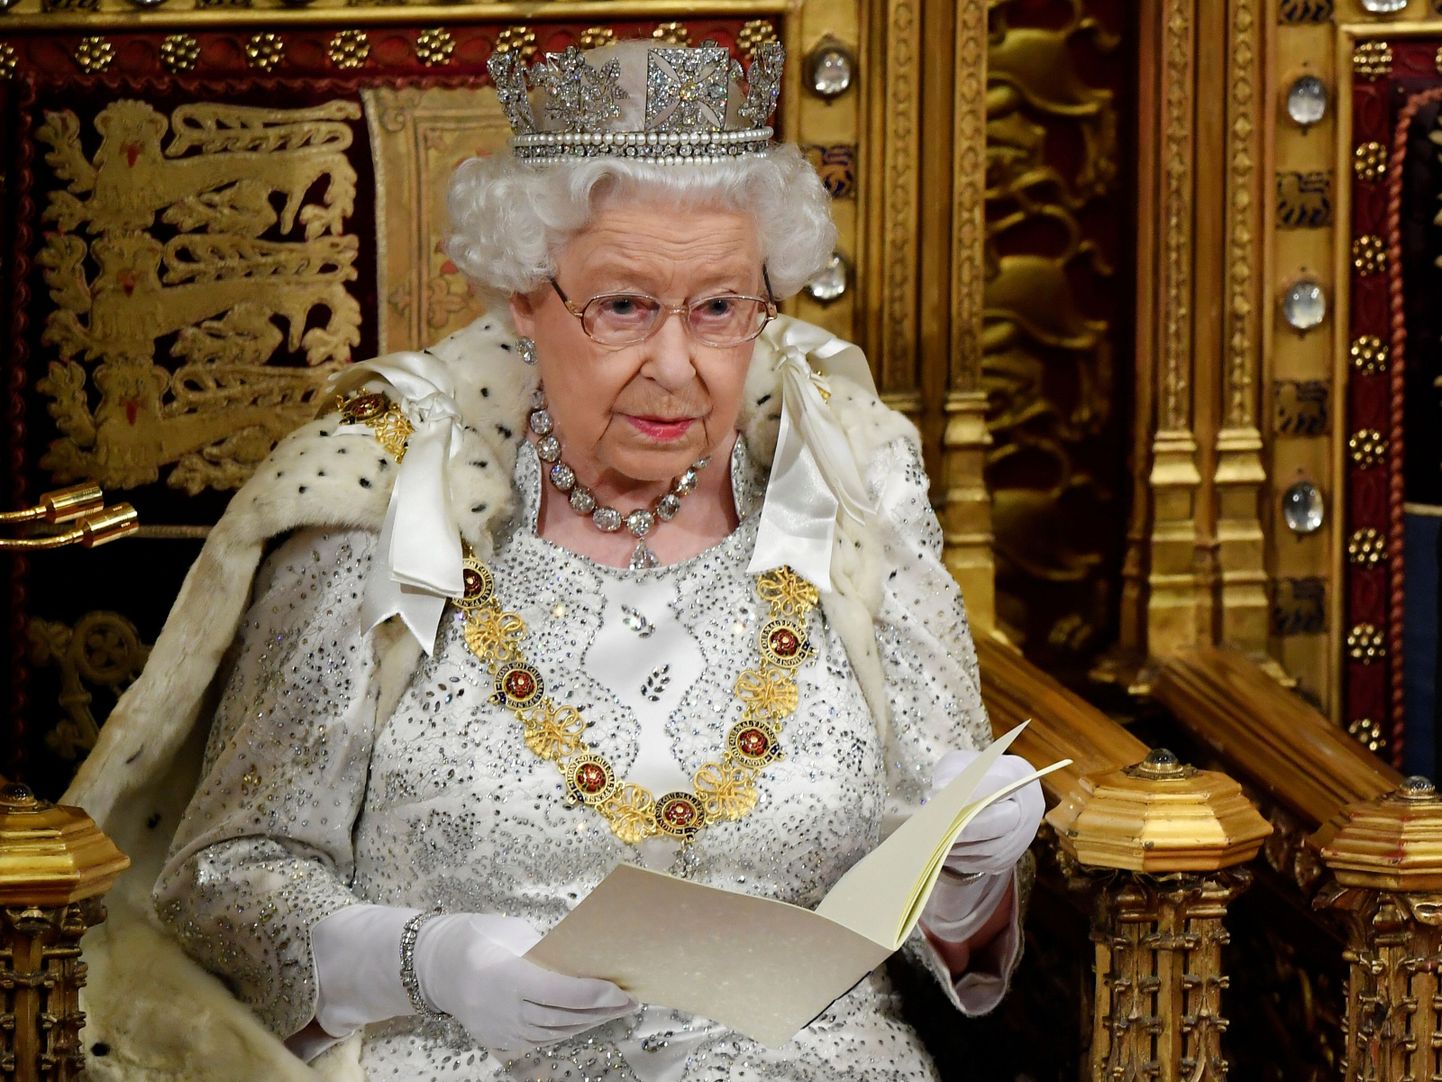 Briti kuninganna Elizabeth II esmaspäeval lordide kojas monarhi troonil parlamendi uue istungjärgu avaistungil valitsuse seadusandlikku päevakorda tutvustavat kõnet pidamas.